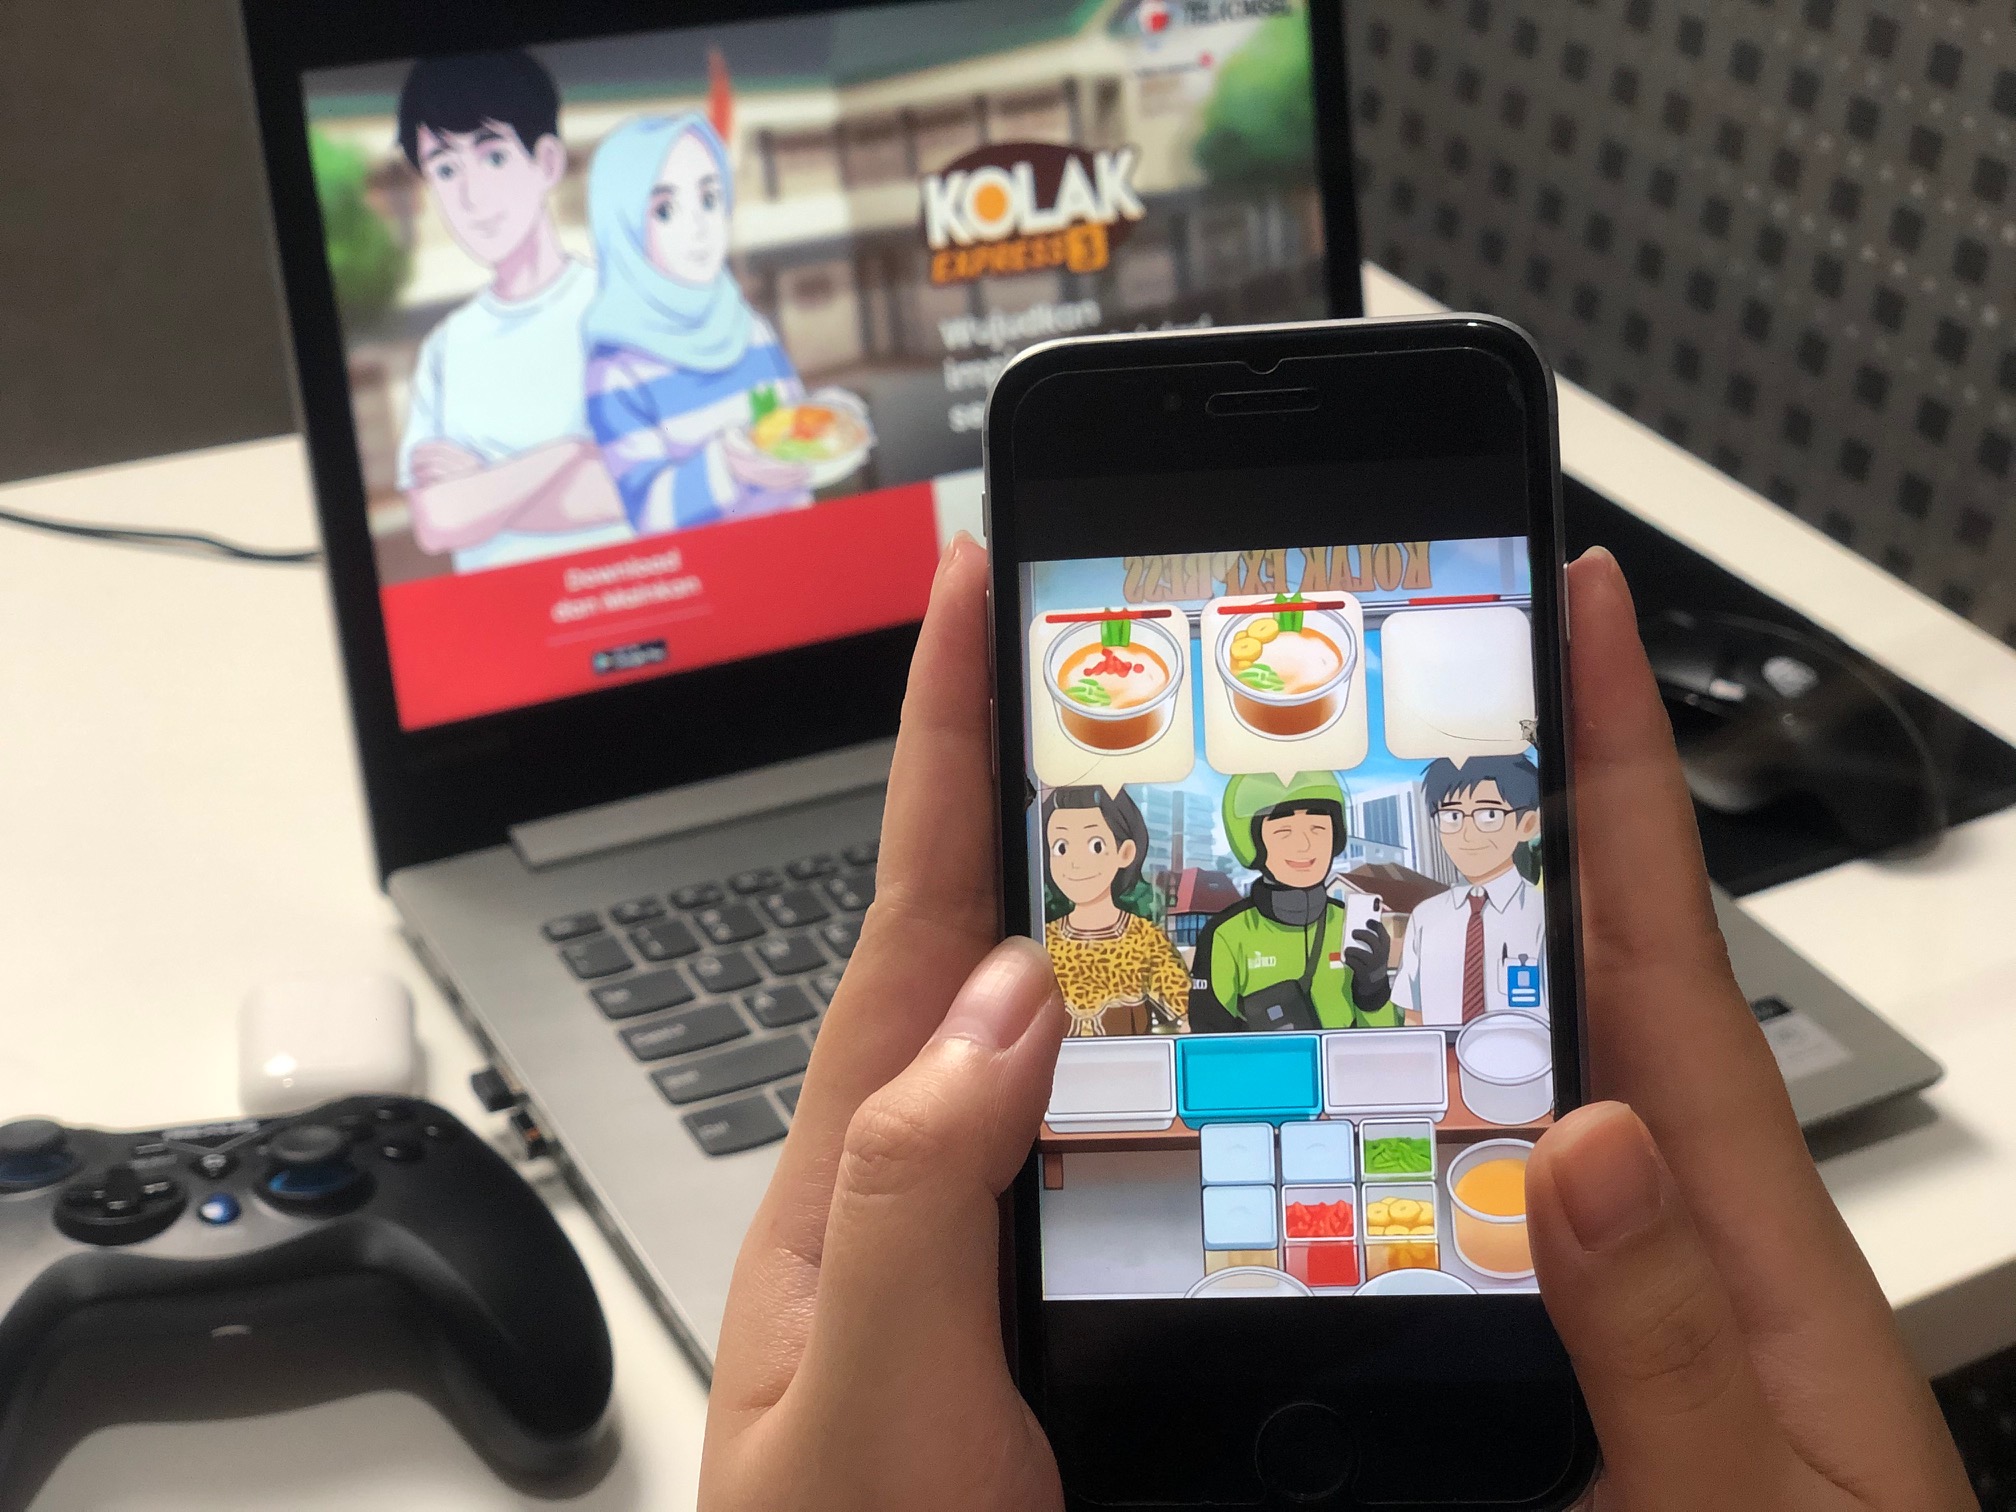 ค่ายเกม Dunia Games ในเครือบริษัท Telkomsel เปิดตัวเกม Kolak Express 3 มุ่งเป็นผู้นำด้านเกมมือถือในอินโดนีเซีย